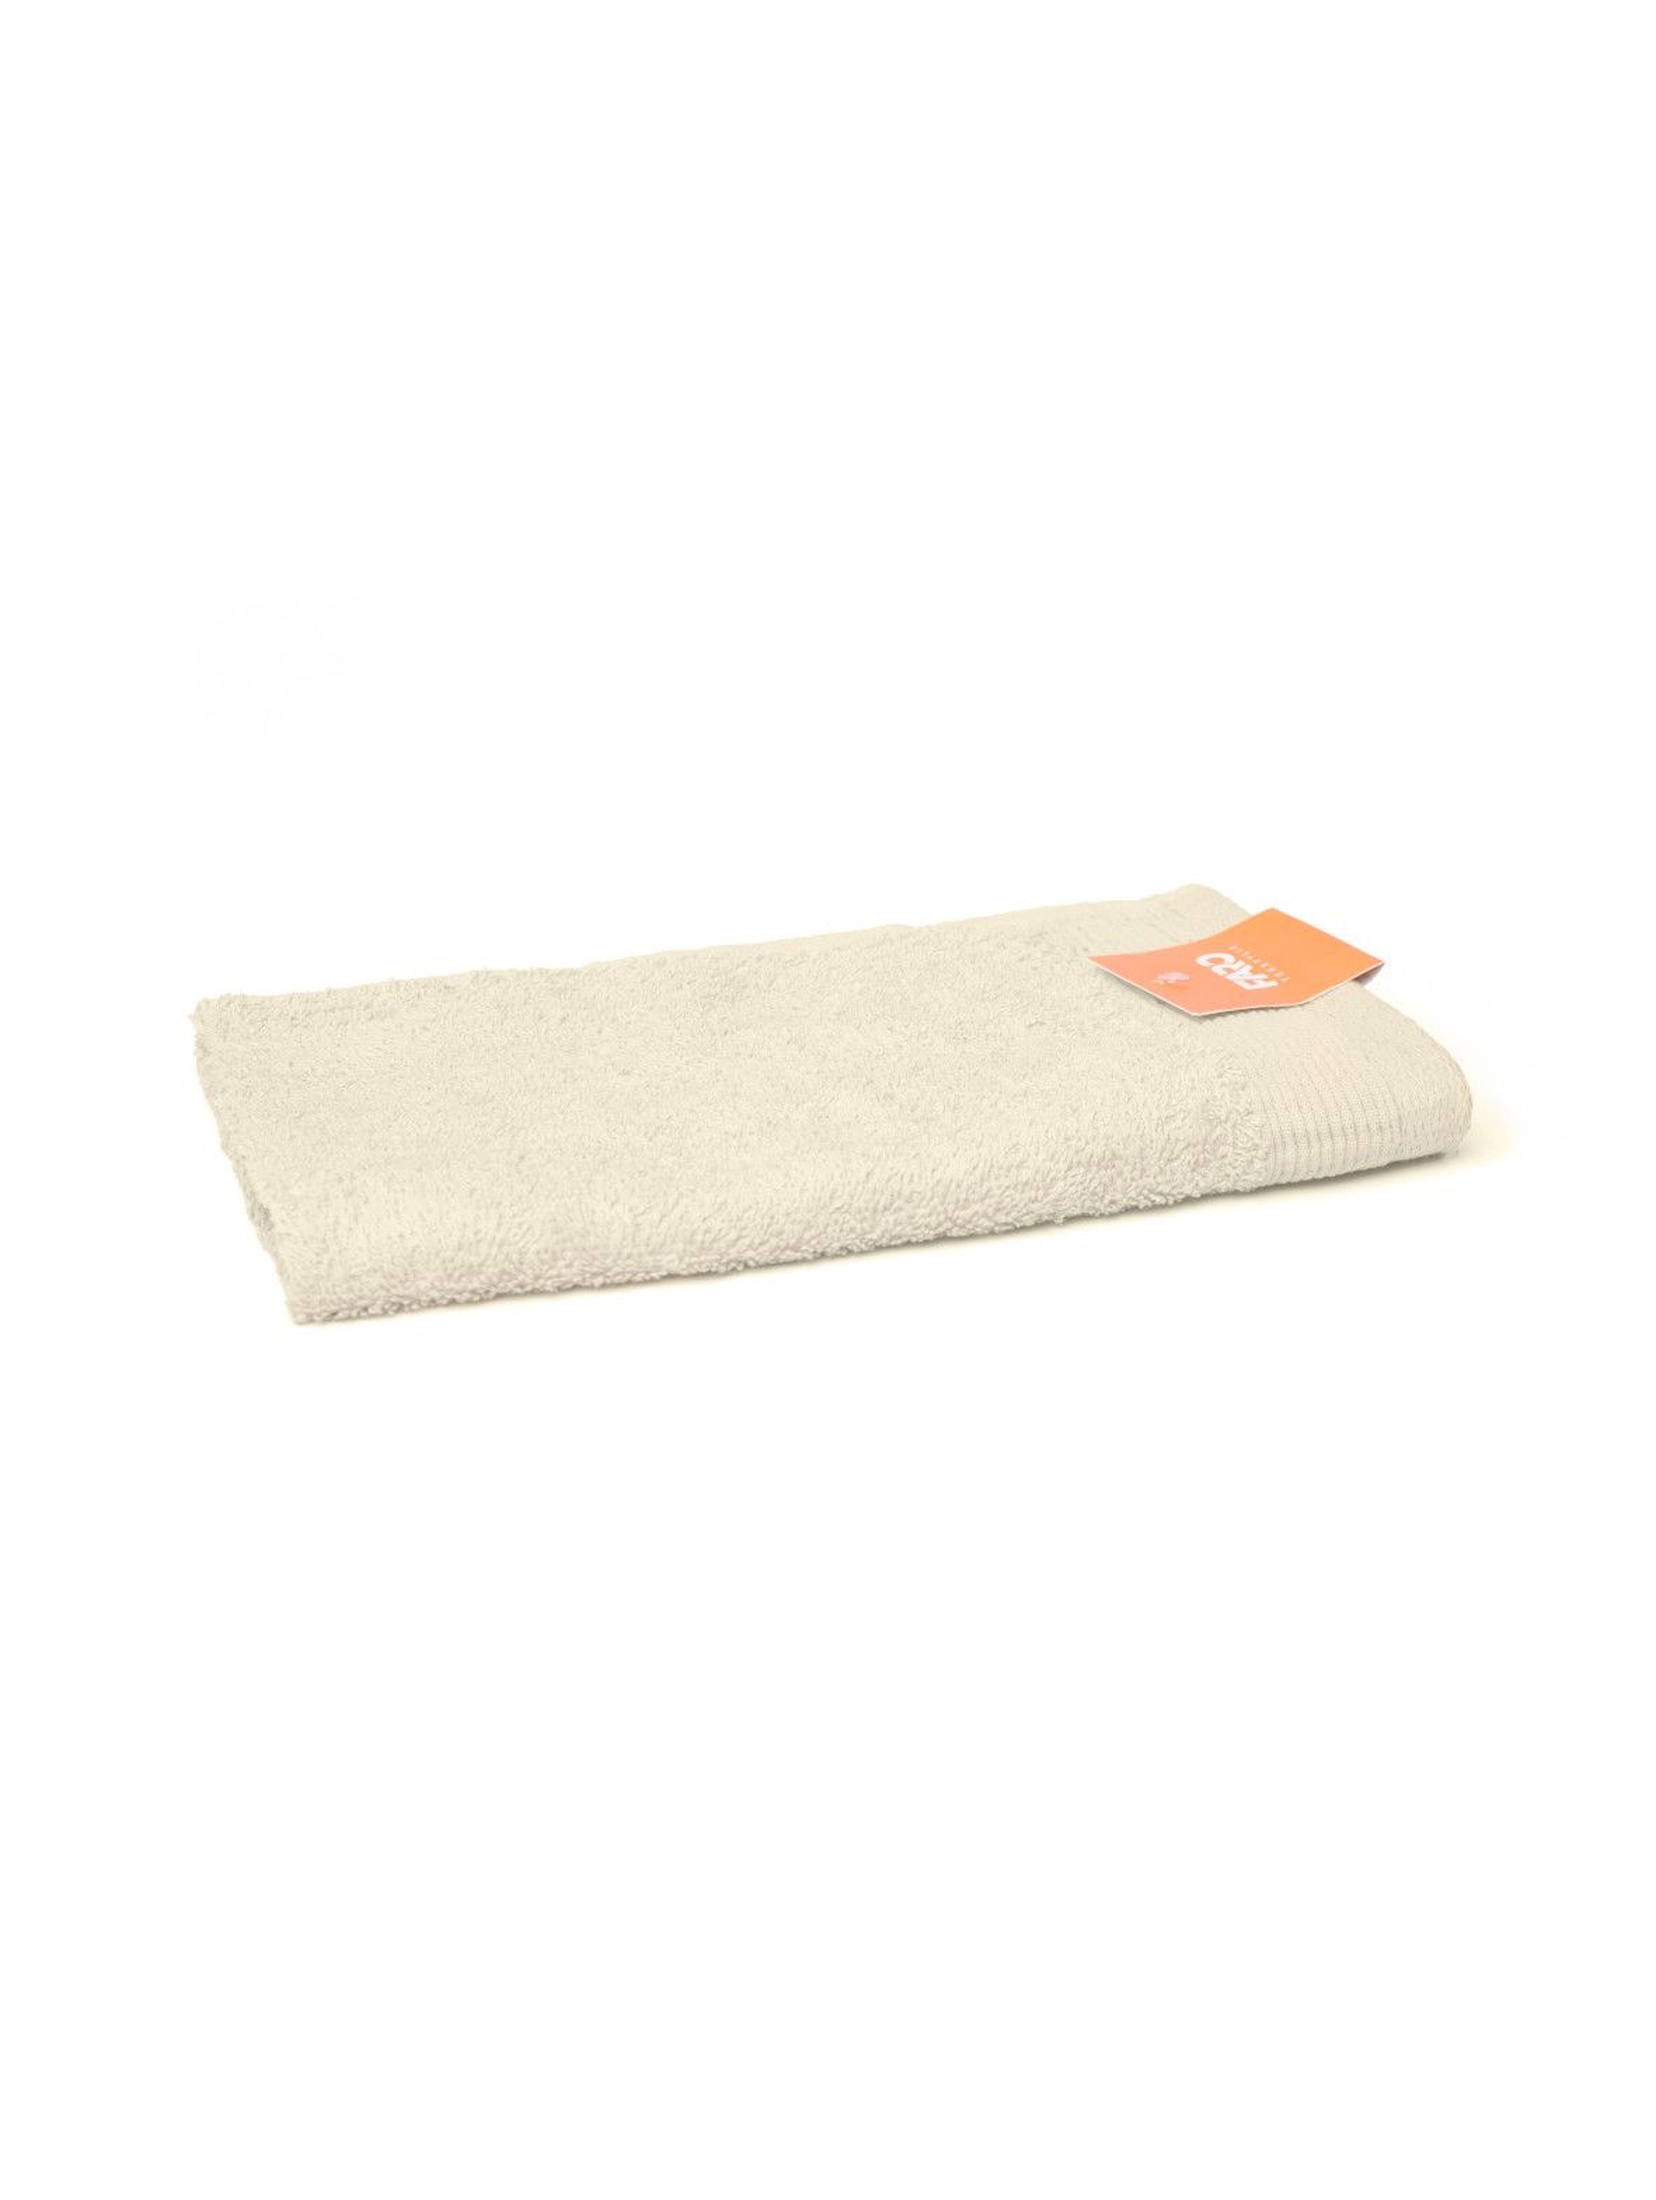 2-pak ręczników Aqua w kolorze ecri 30x50 cm